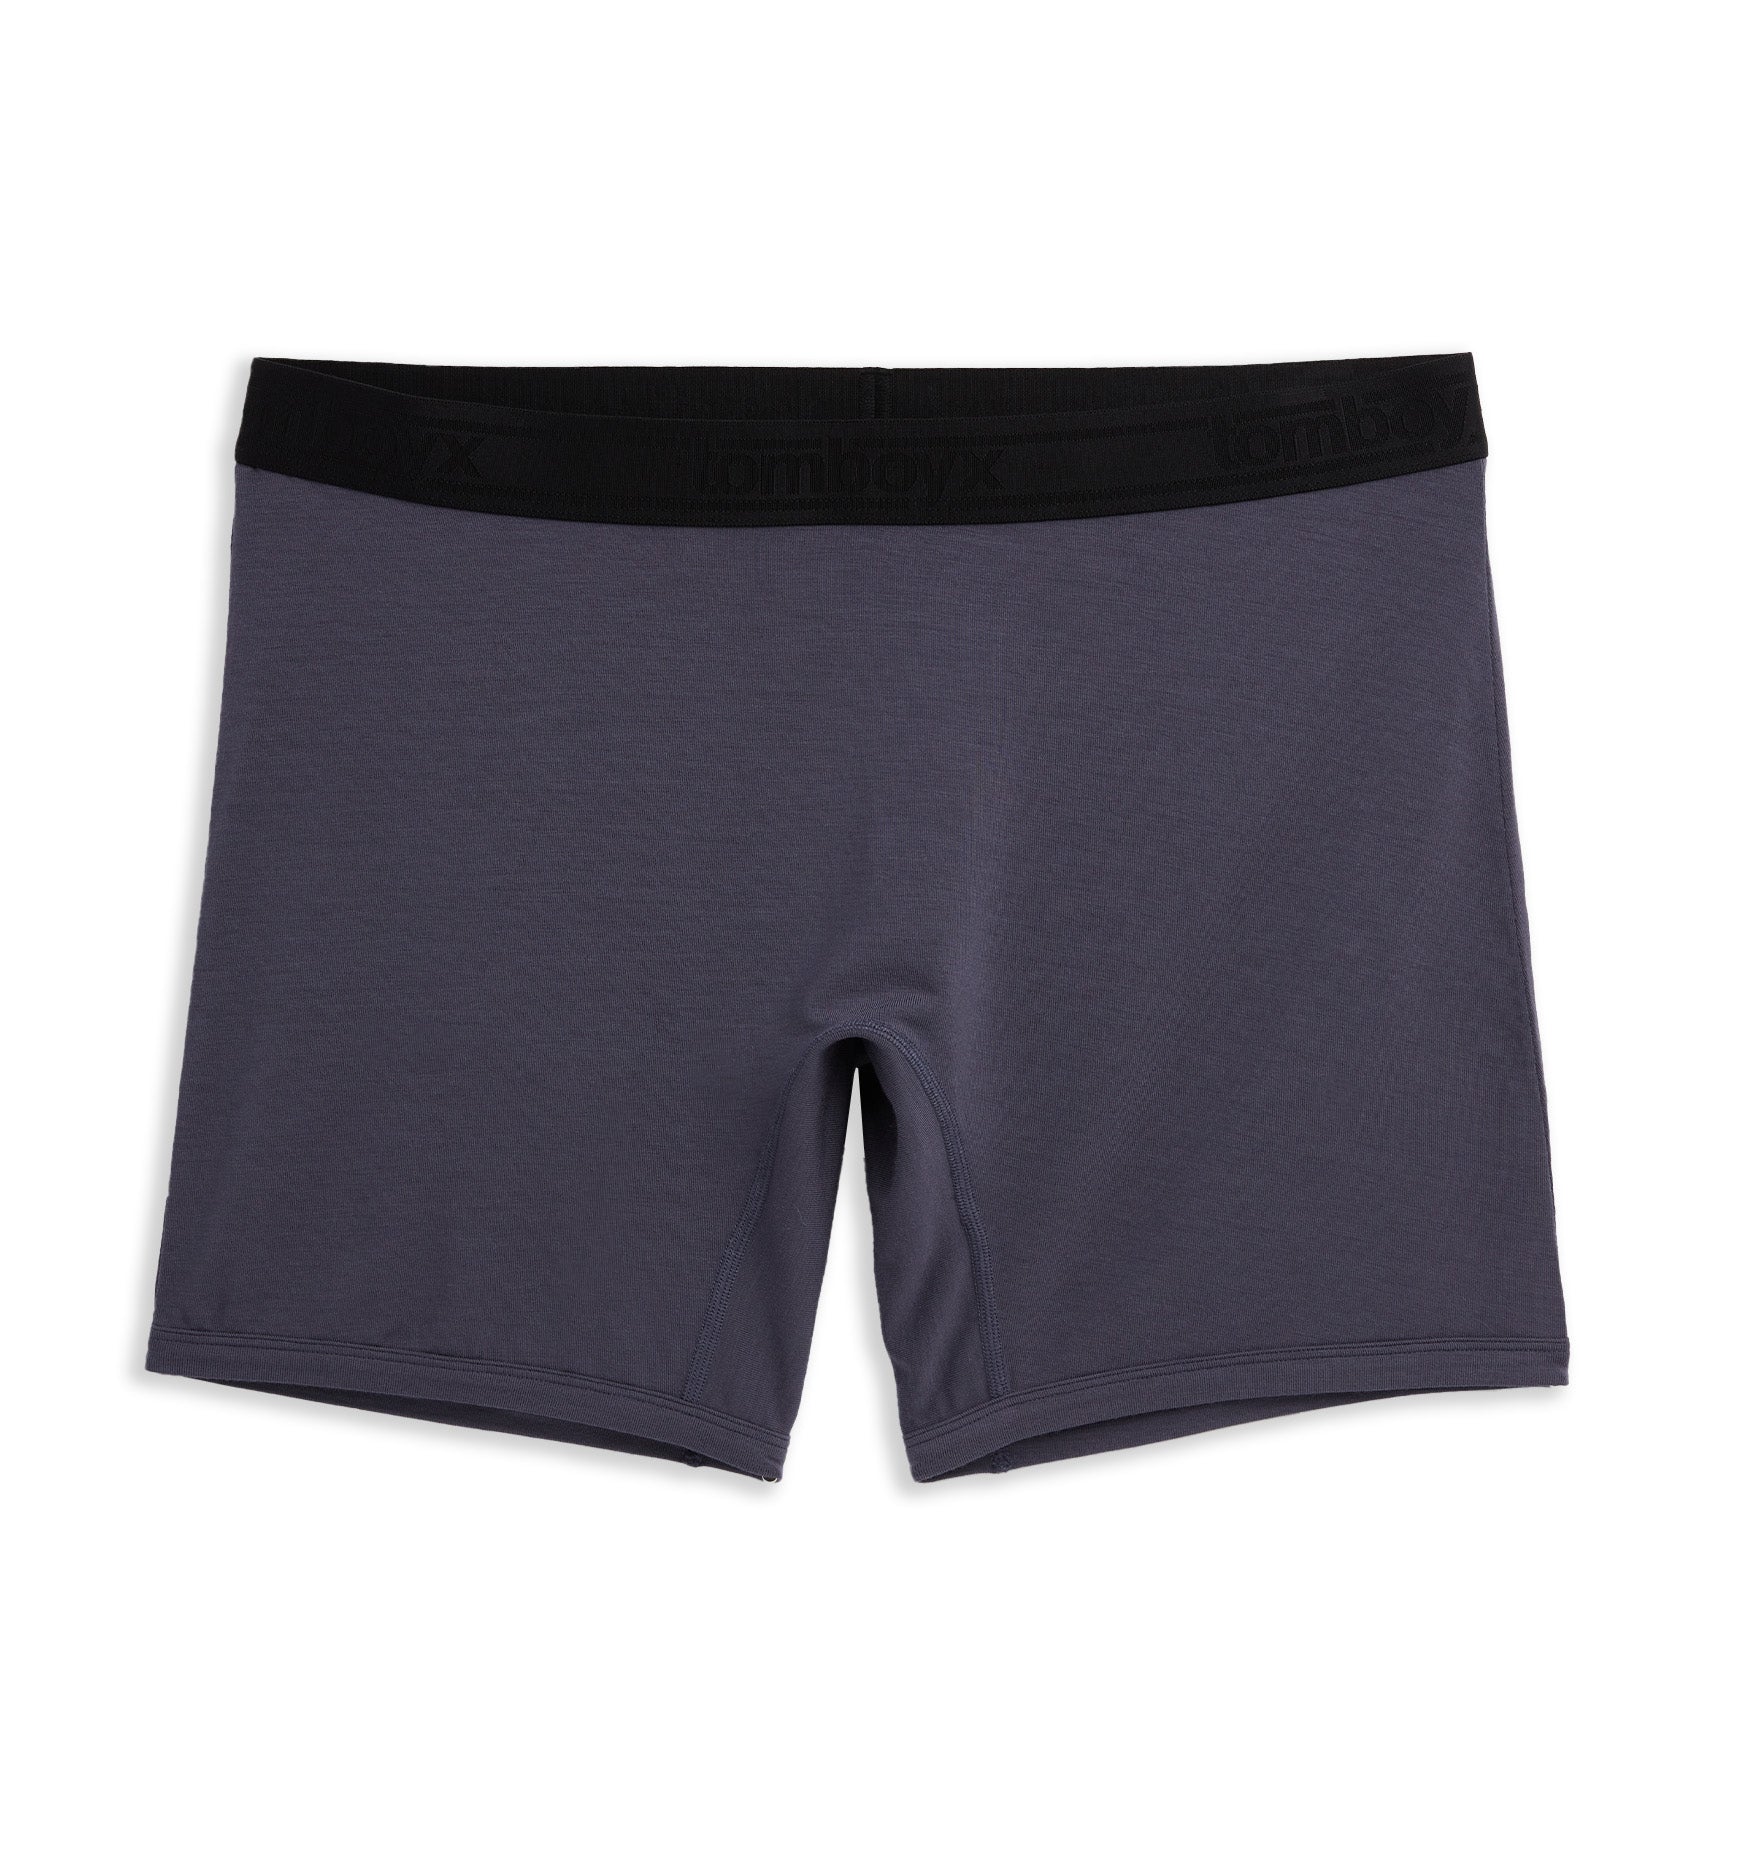 Tomboyx Boxer Briefs Underwear, 4.5 Inseam, Cotton Stretch Comfortable Boy  Shorts Progress Pride Stripe 3x Large : Target